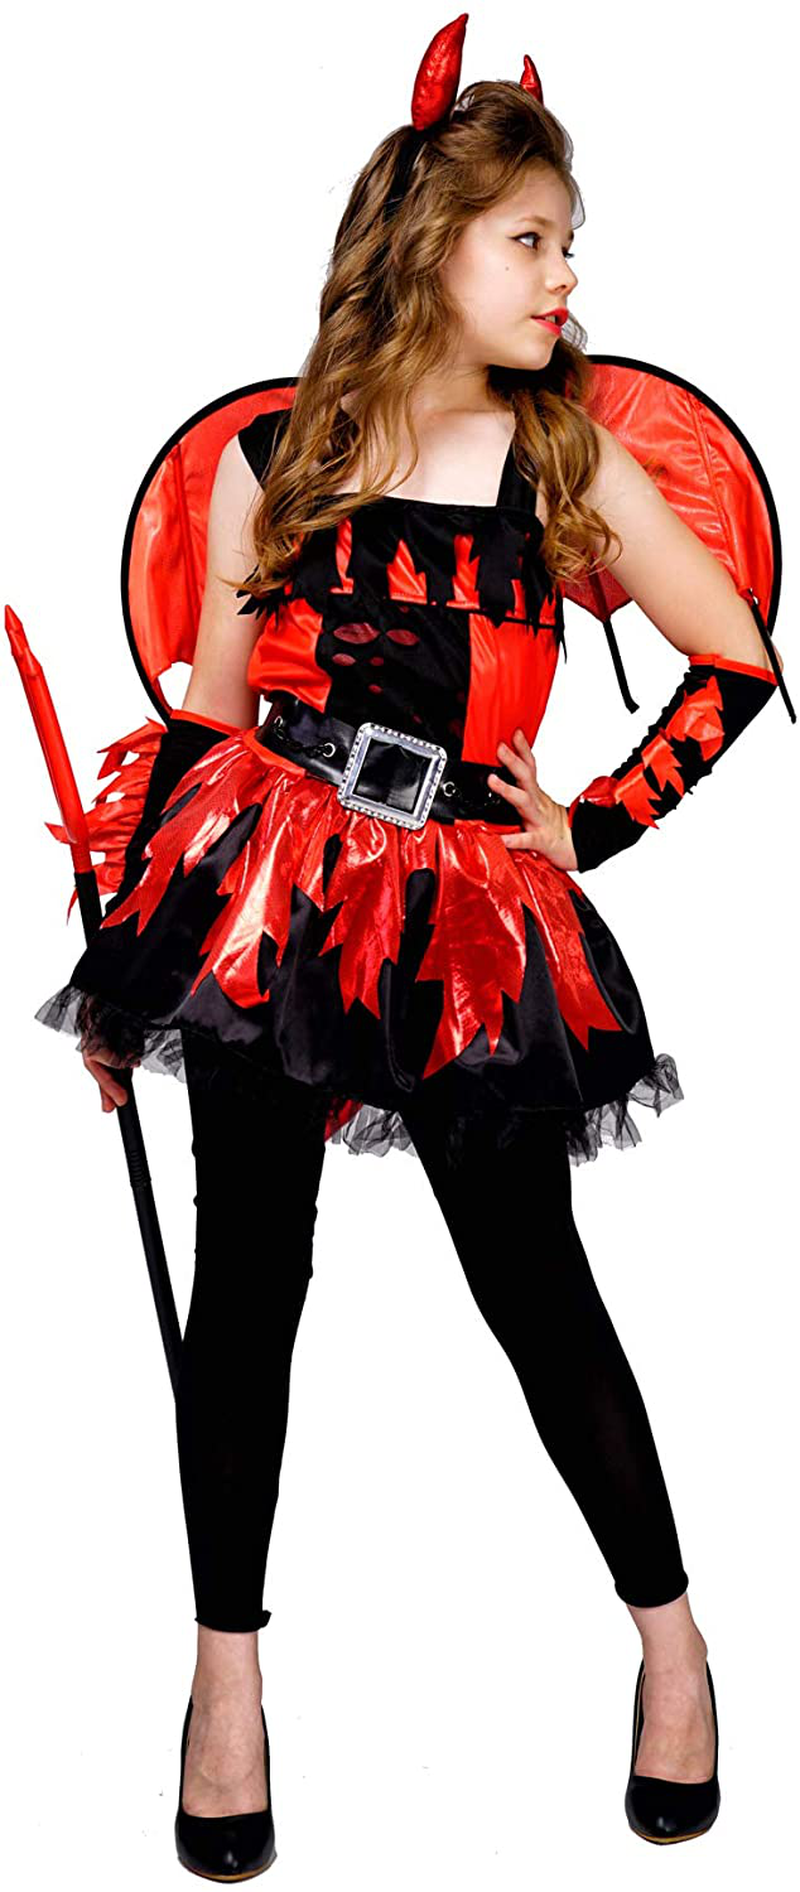 PGOND Red Devil Dress Halloween Costume for Girls